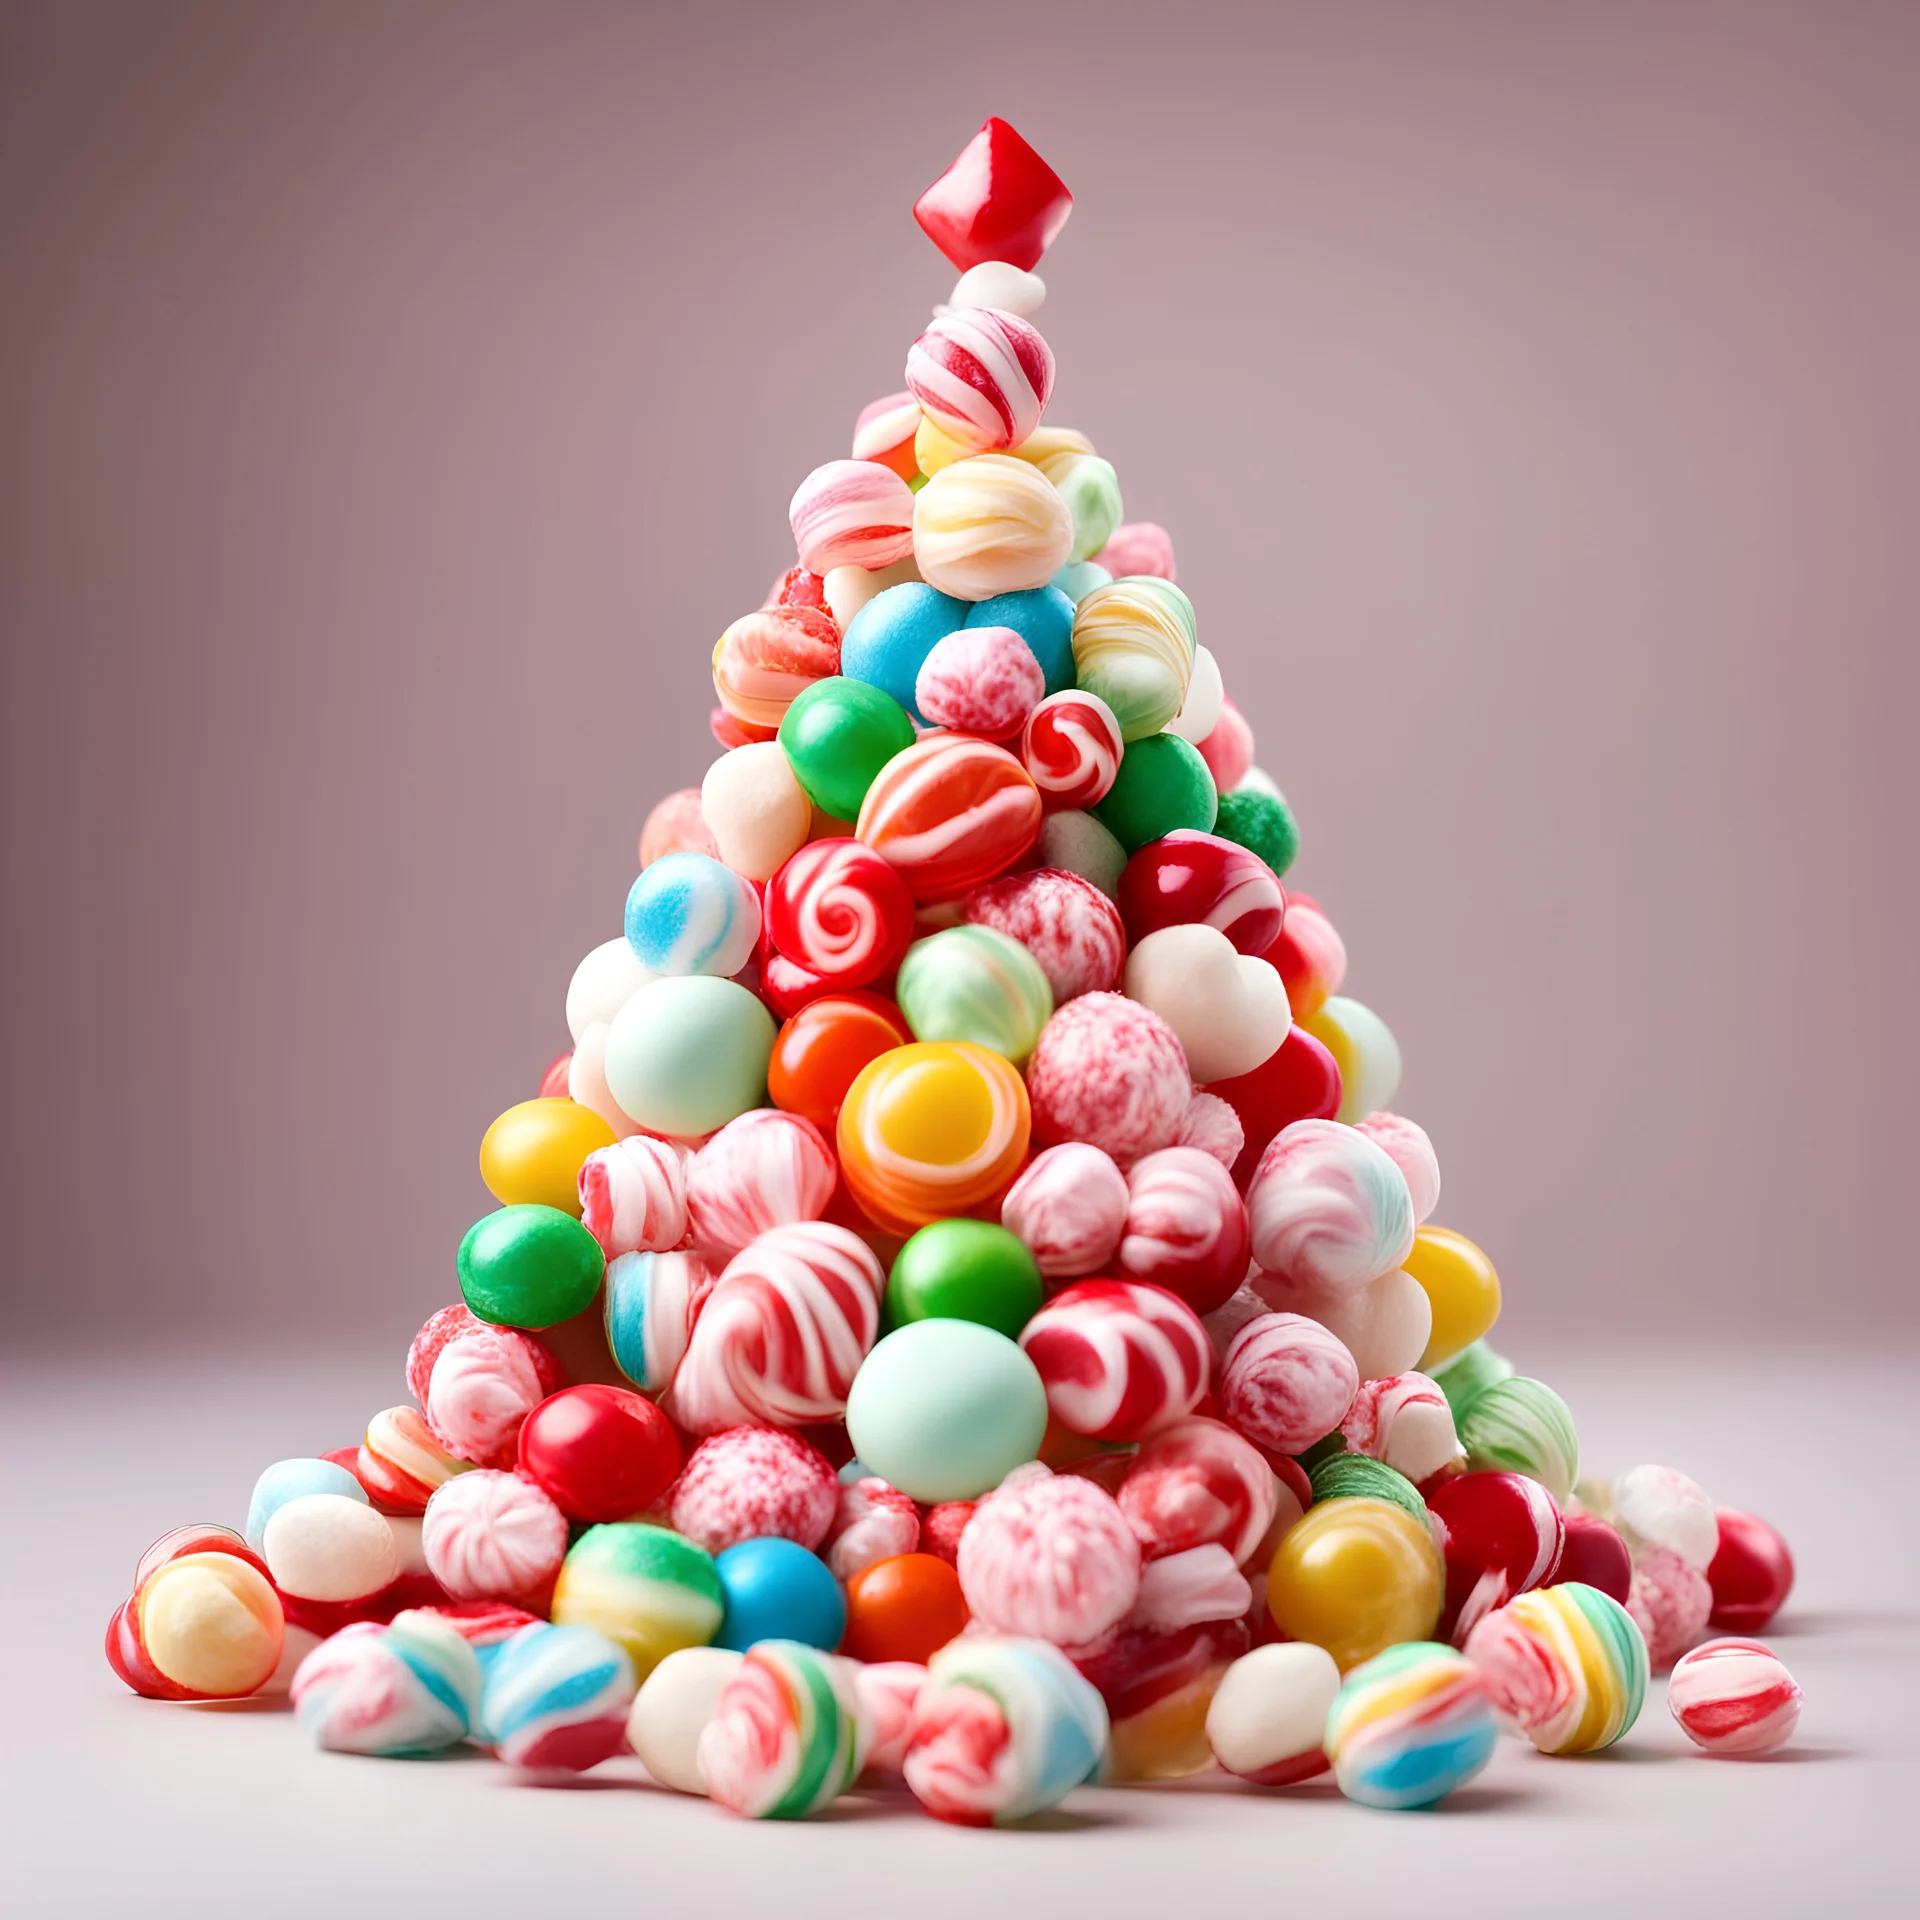 Как сделать елку из конфет своими руками: смотри и создавай сладкое новогоднее настроение